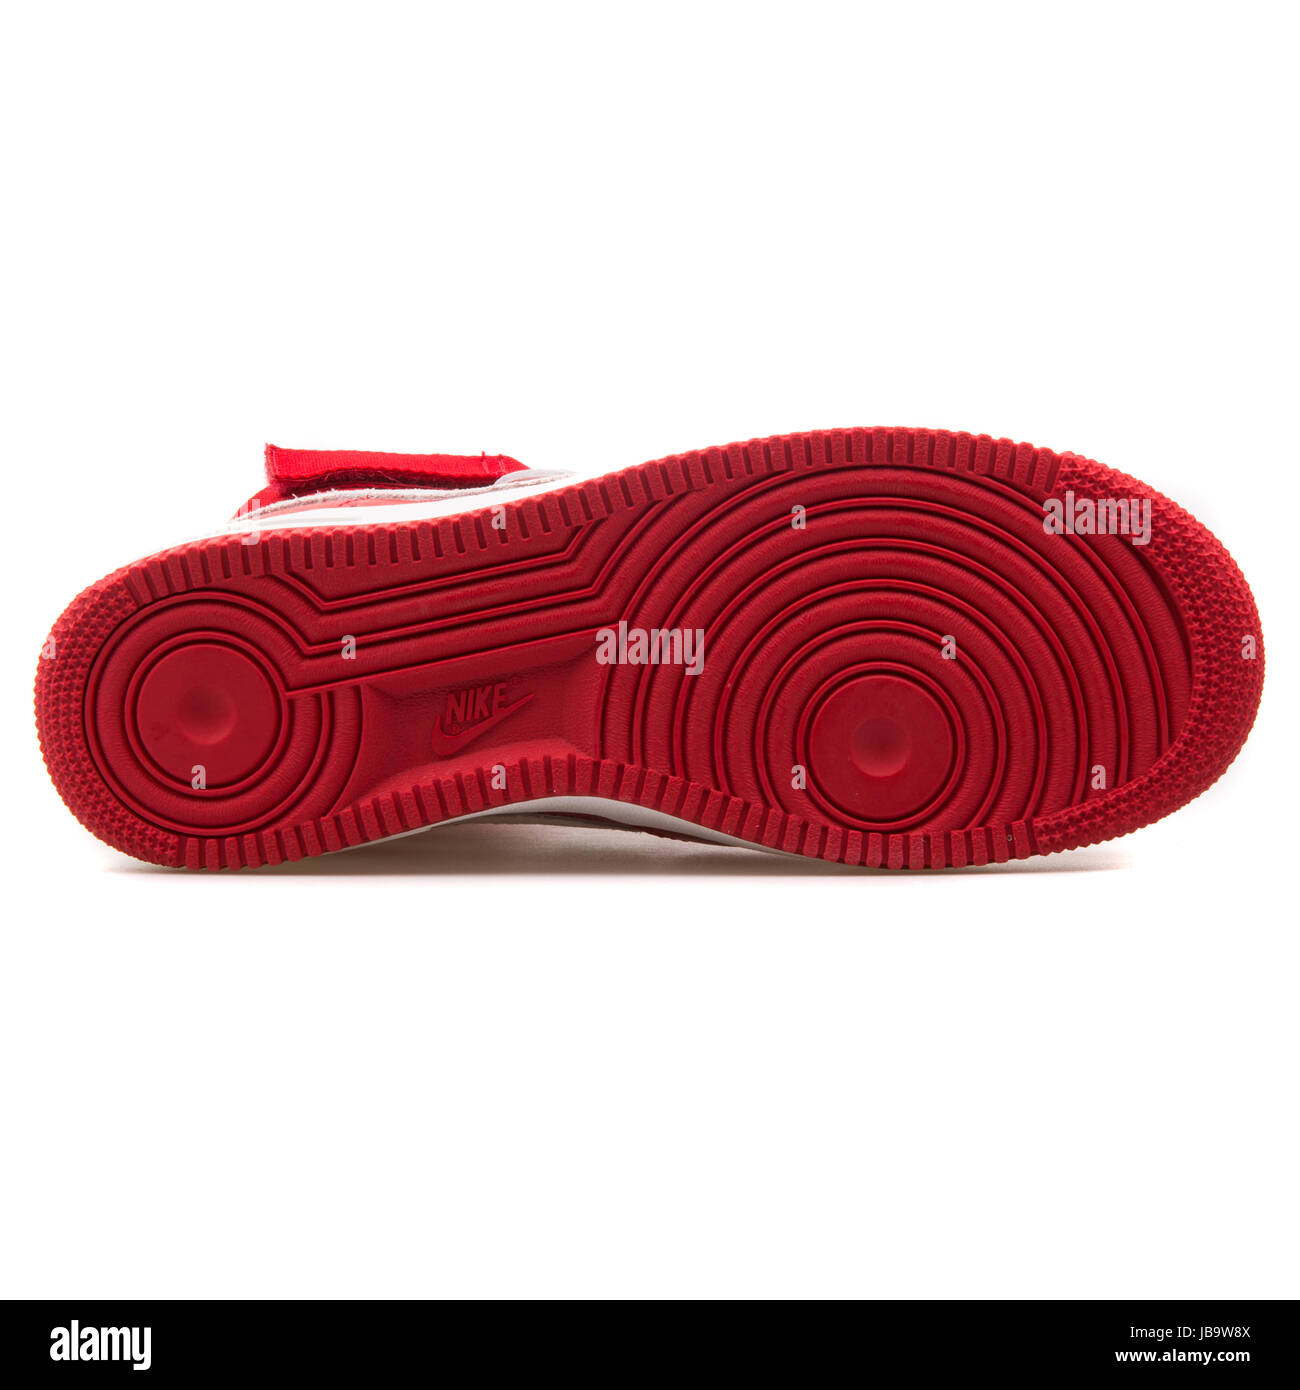 Nike Air Force 1 Hi Retro QS Gimnasio rojo y blanco en la cumbre China  exclusivas zapatillas de baloncesto de los hombres Retro - 743546-600  Fotografía de stock - Alamy